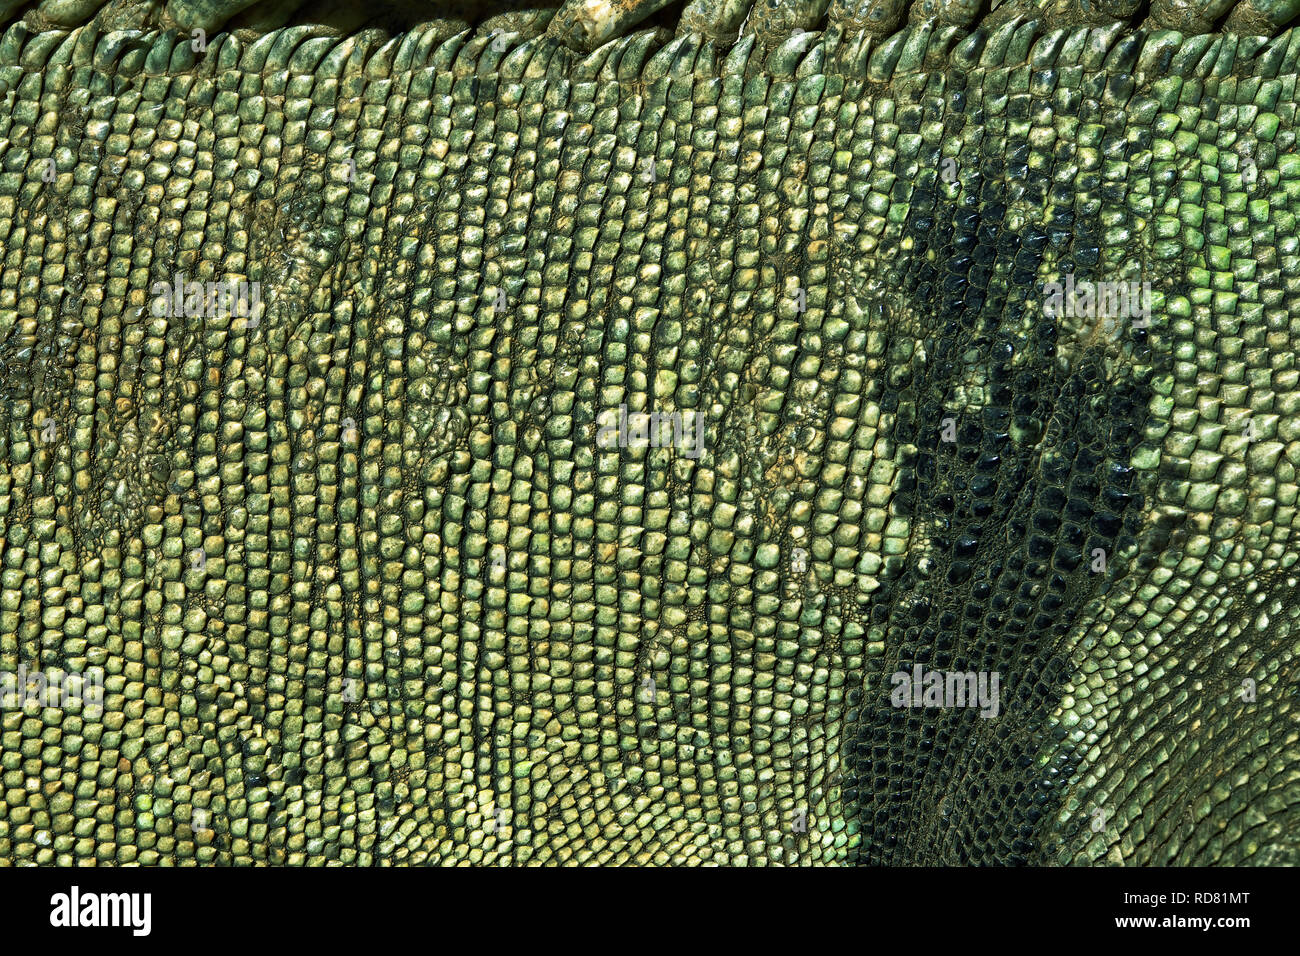 forkorte kjole Matematisk Iguana skin iguana iguana hi-res stock photography and images - Alamy